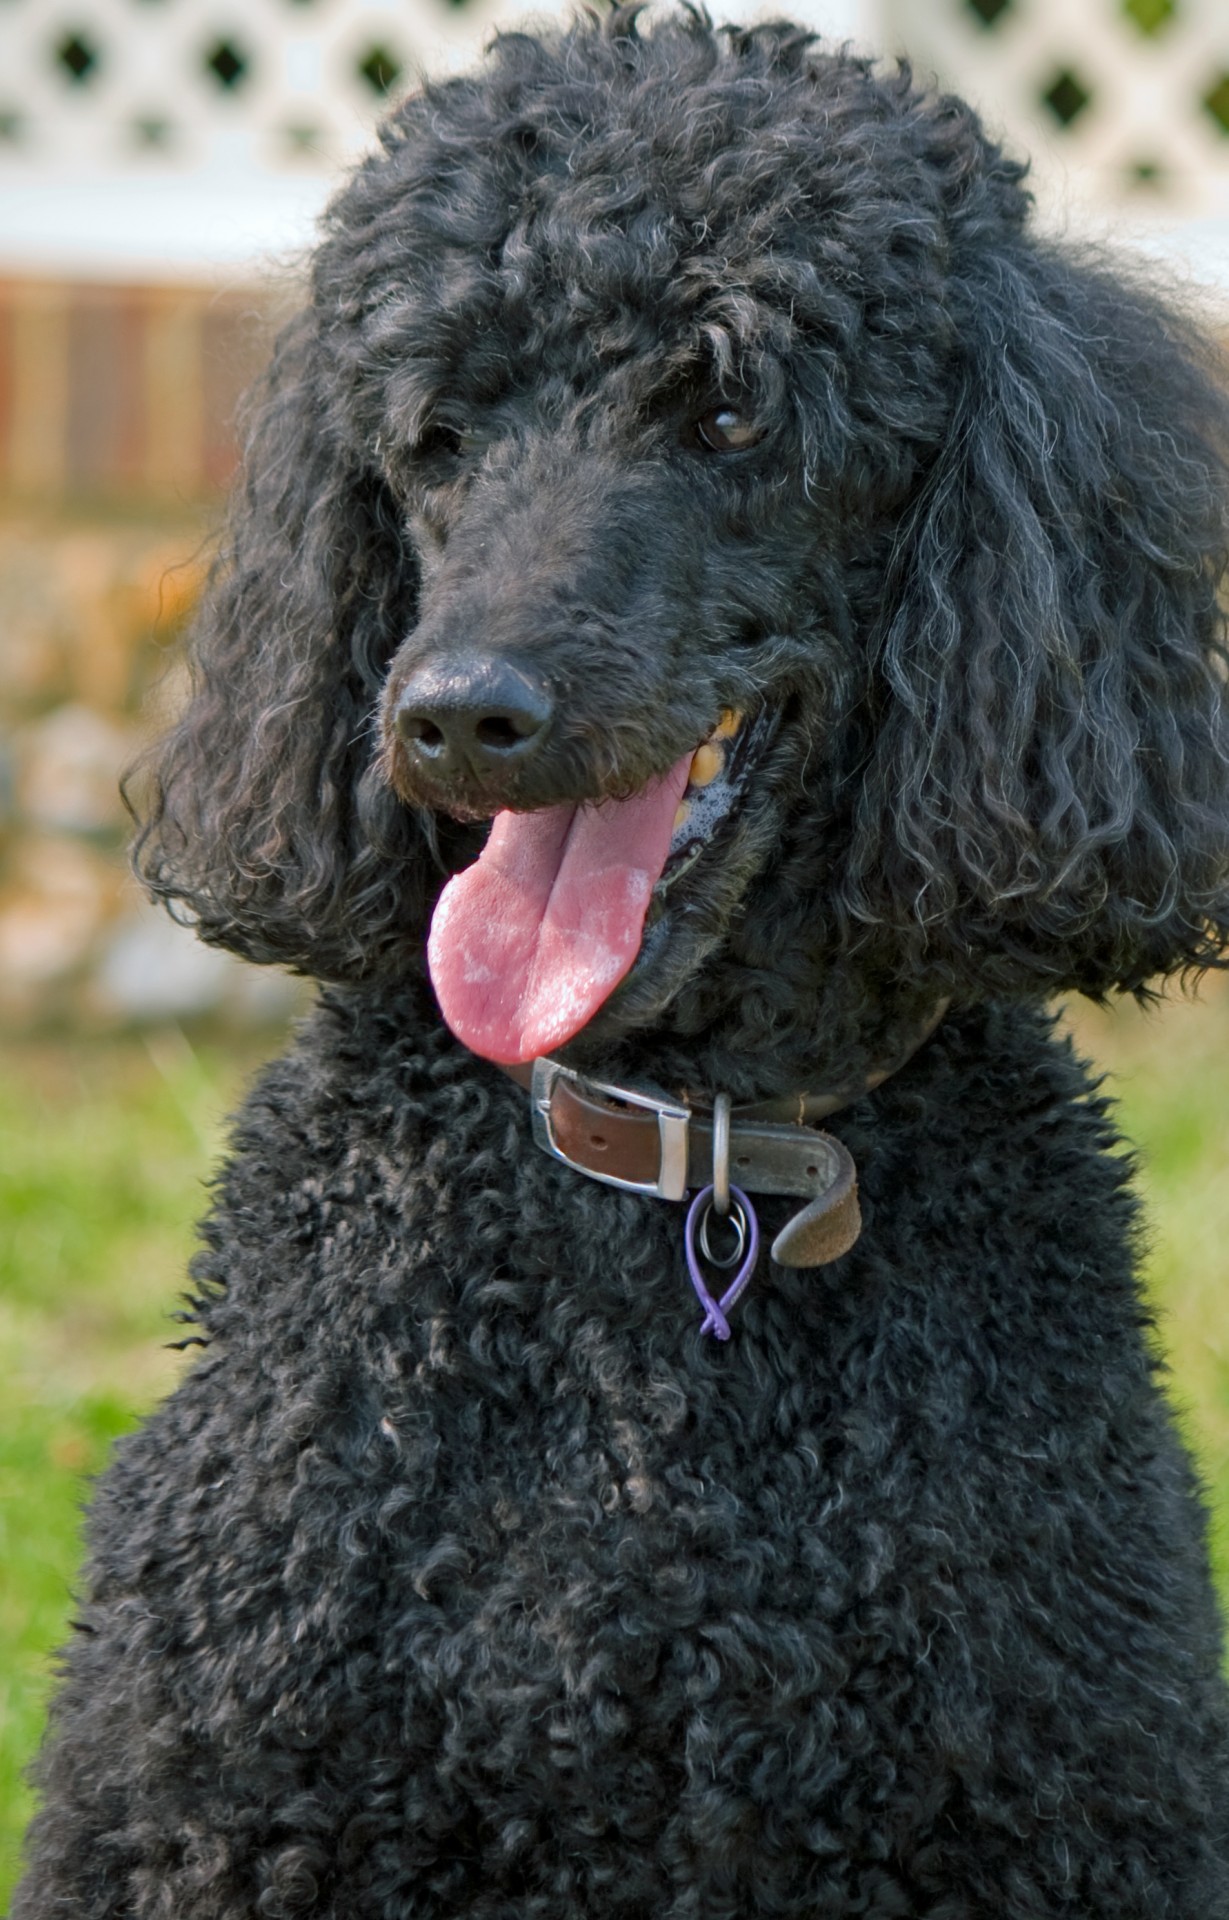 black poodle dog